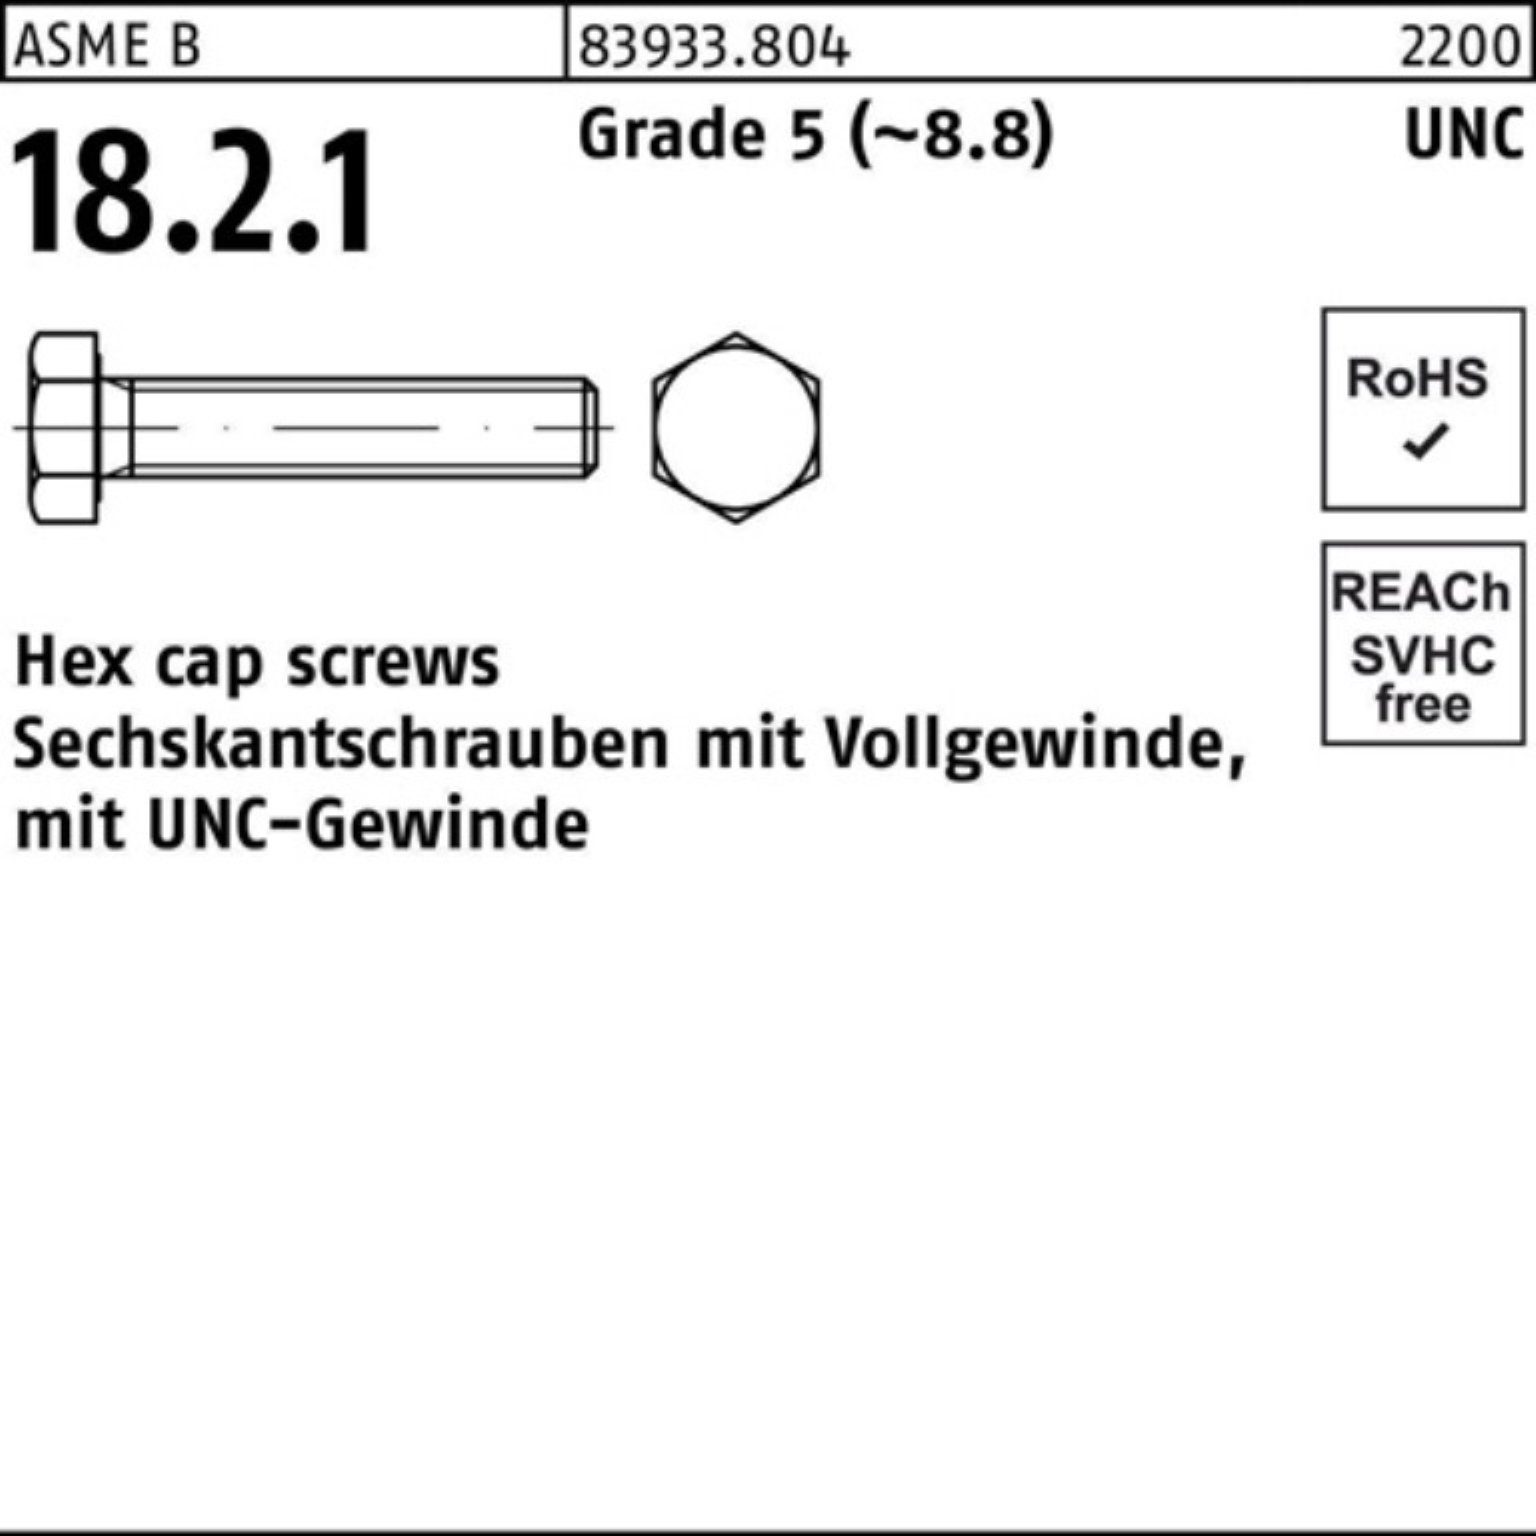 Reyher Sechskantschraube 100er Pack Sechskantschraube R 83933 UNC-Gewinde VG 1/2x 1 1/4 Grade 5